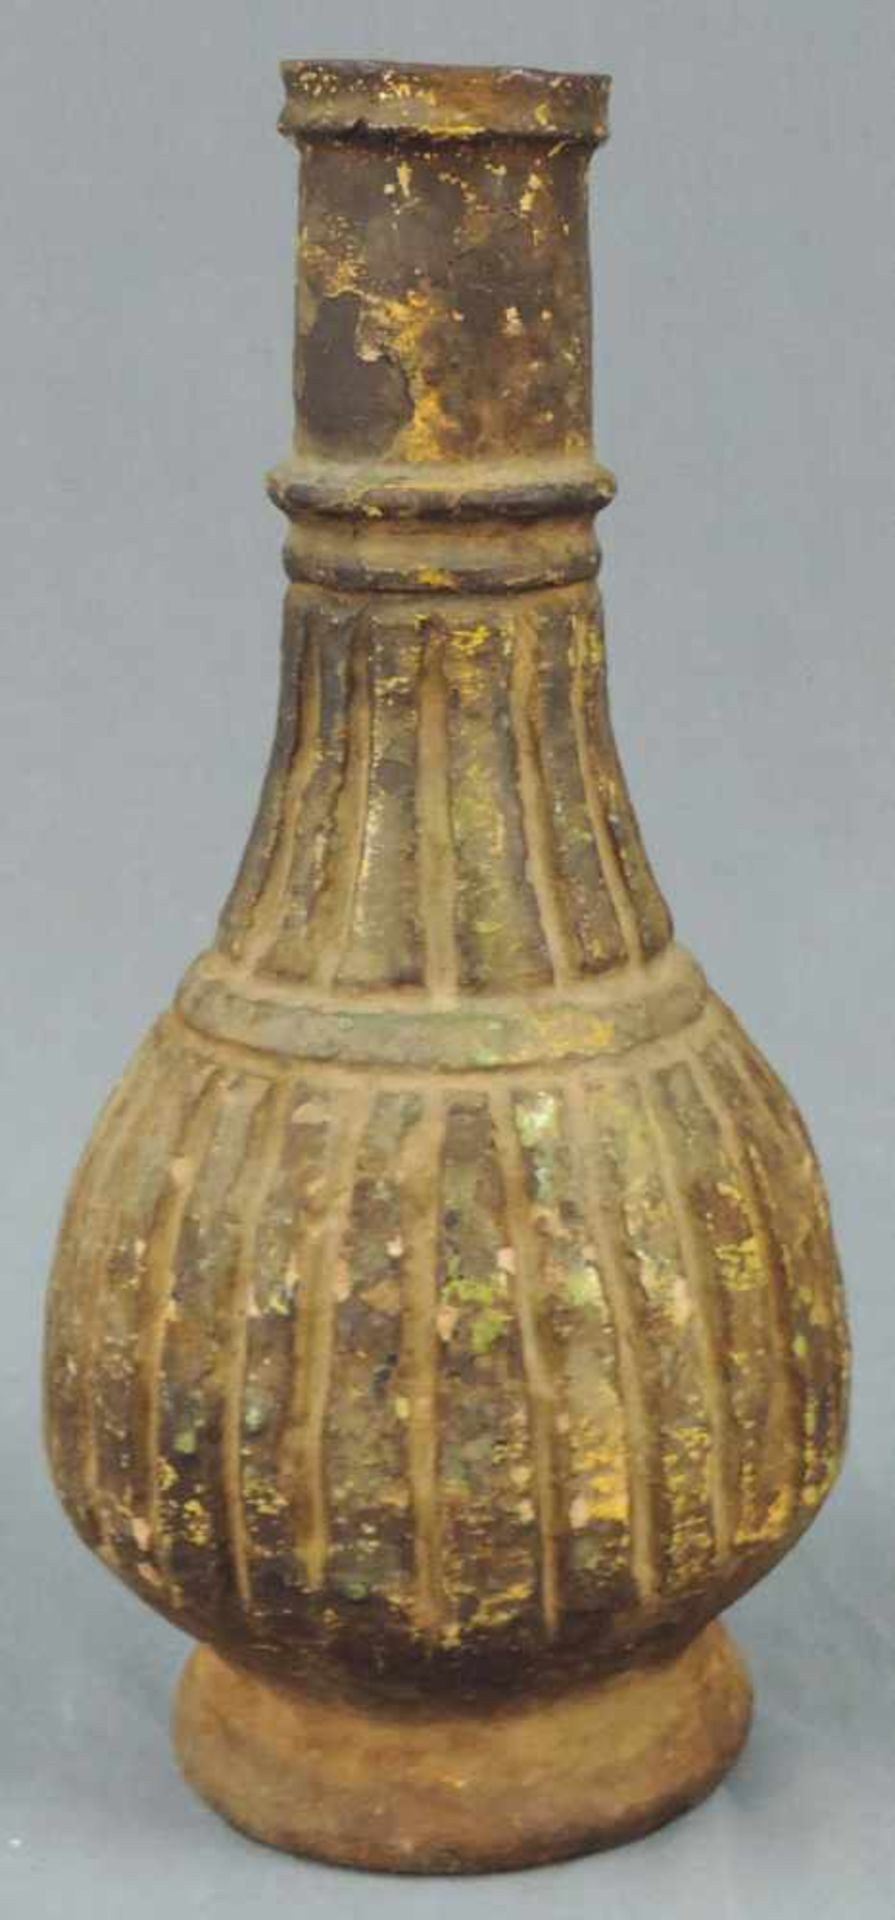 Vase mit Rillendekor. Steingut. Wohl Zentralasien, antik.32 cm hoch.Vase with groove decor.